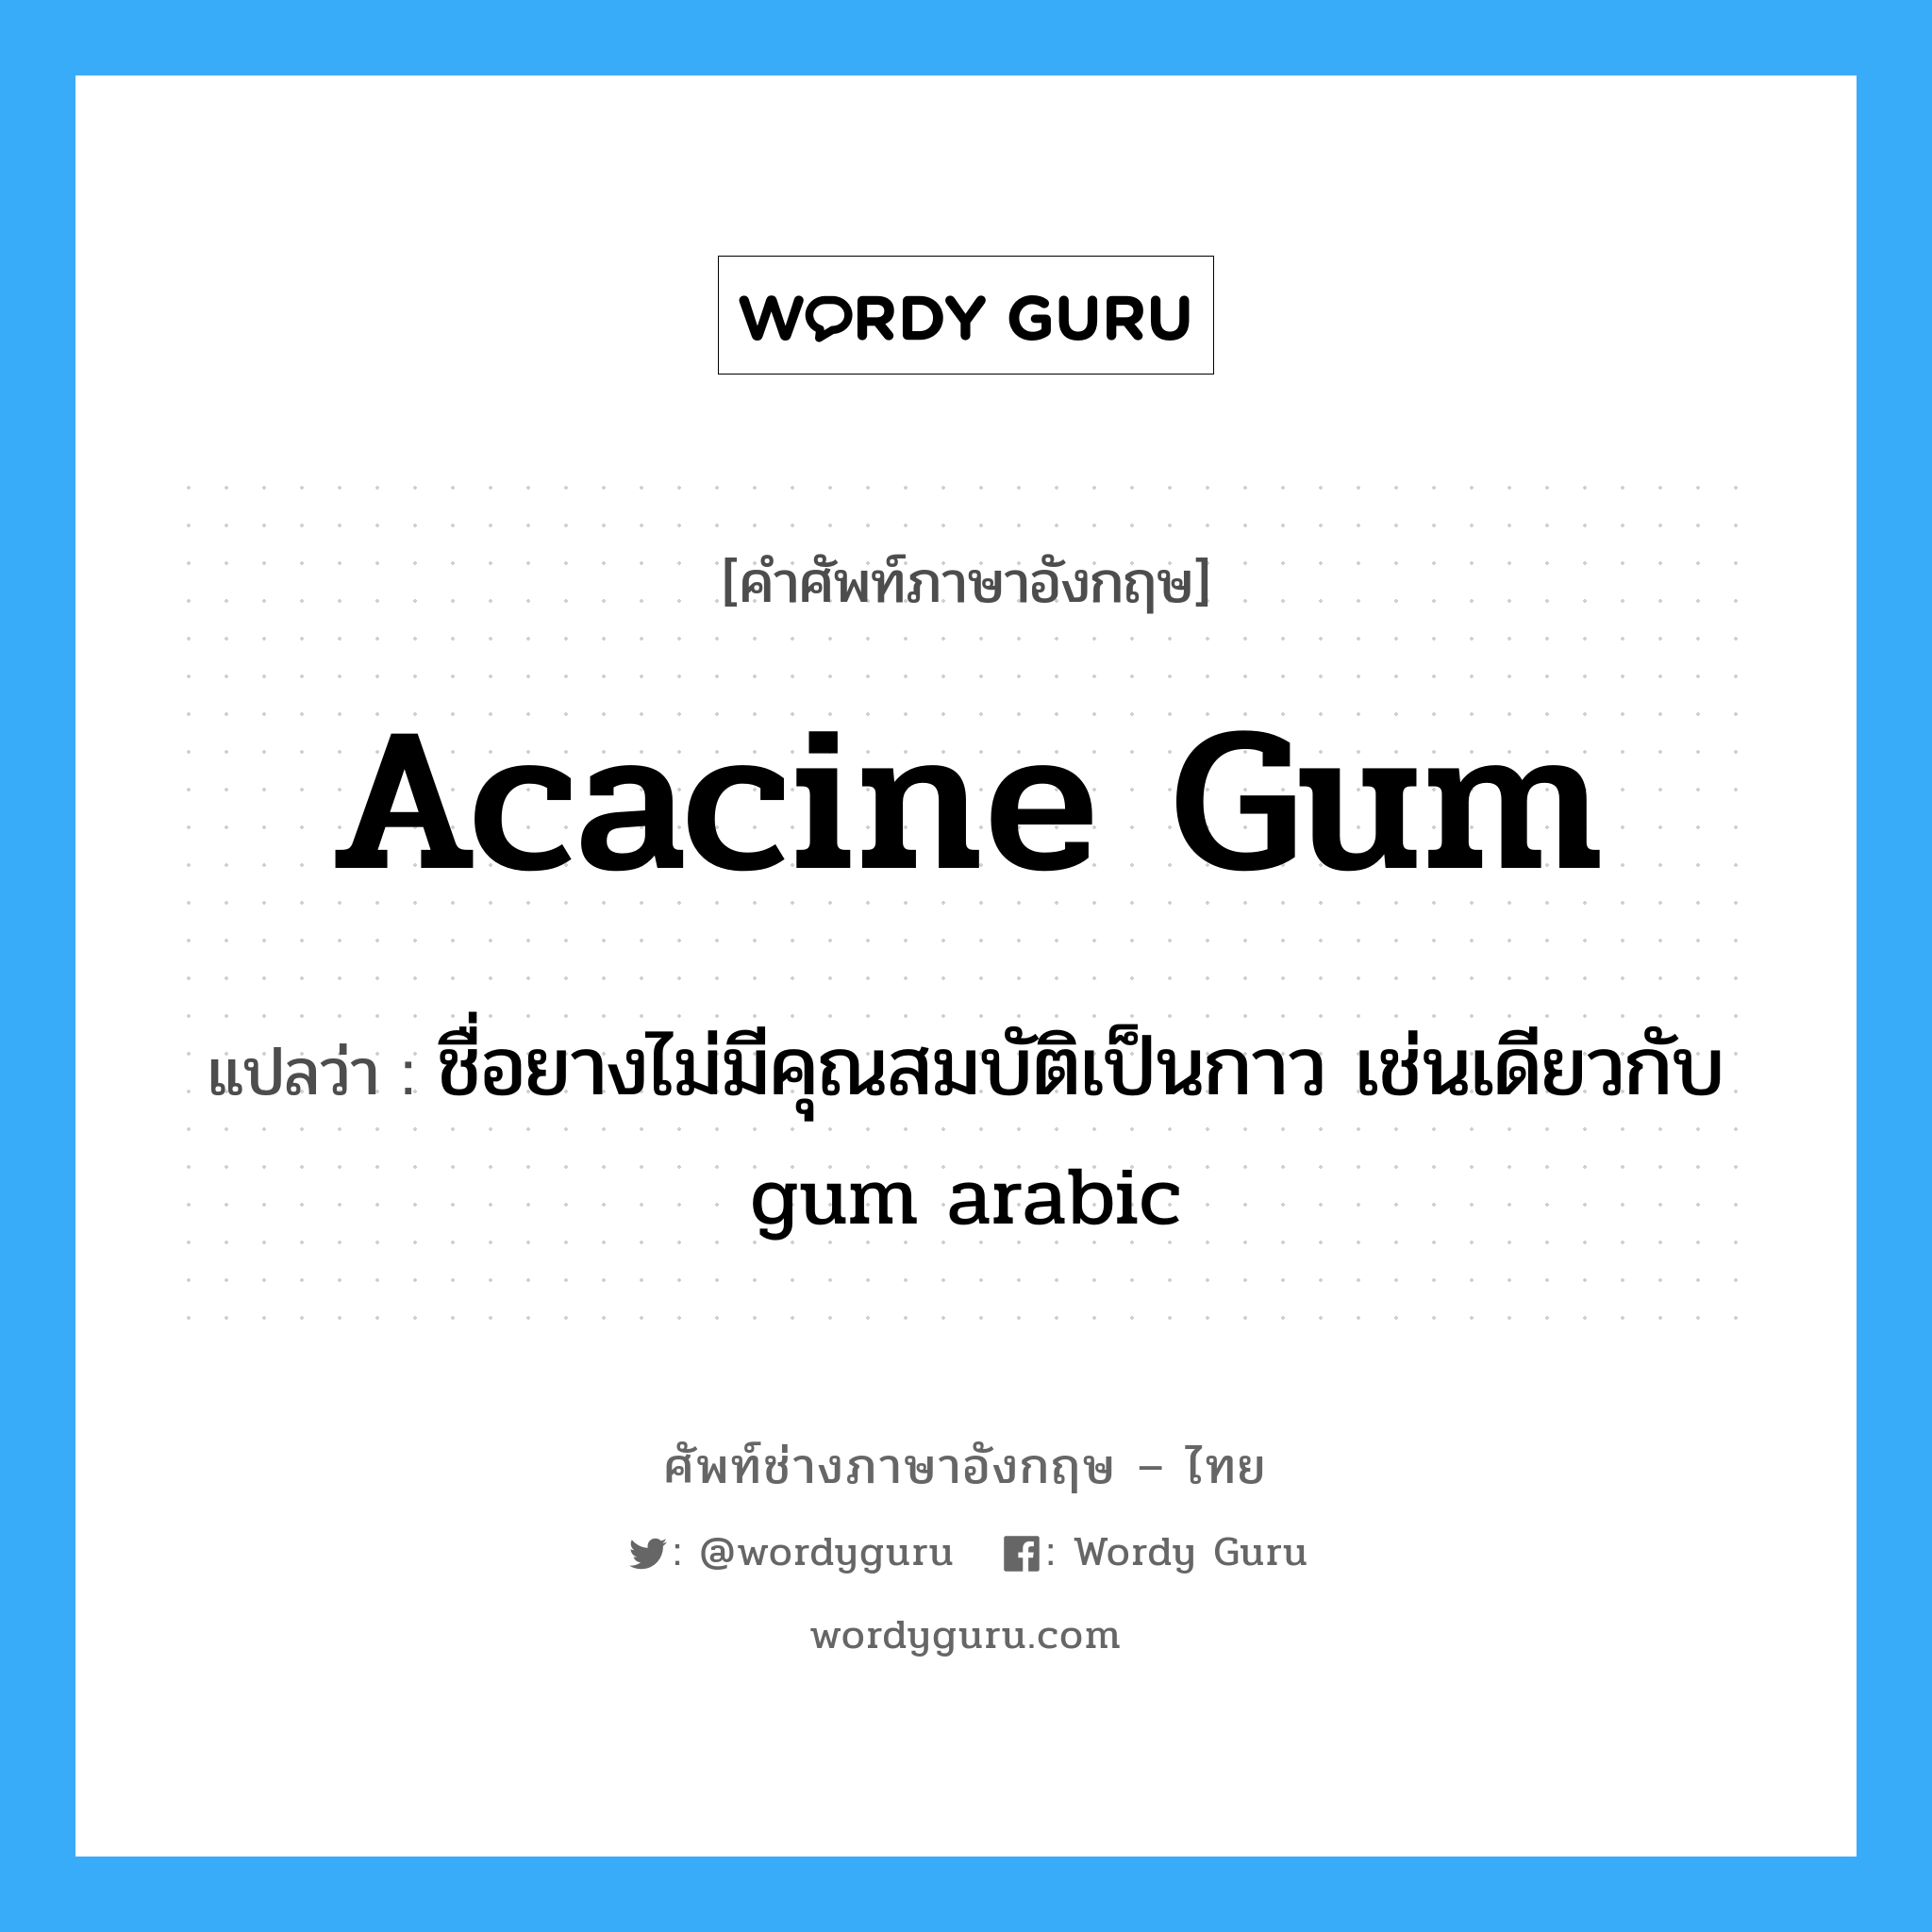 ชื่อยางไม่มีคุณสมบัติเป็นกาว เช่นเดียวกับ gum arabic ภาษาอังกฤษ?, คำศัพท์ช่างภาษาอังกฤษ - ไทย ชื่อยางไม่มีคุณสมบัติเป็นกาว เช่นเดียวกับ gum arabic คำศัพท์ภาษาอังกฤษ ชื่อยางไม่มีคุณสมบัติเป็นกาว เช่นเดียวกับ gum arabic แปลว่า acacine gum